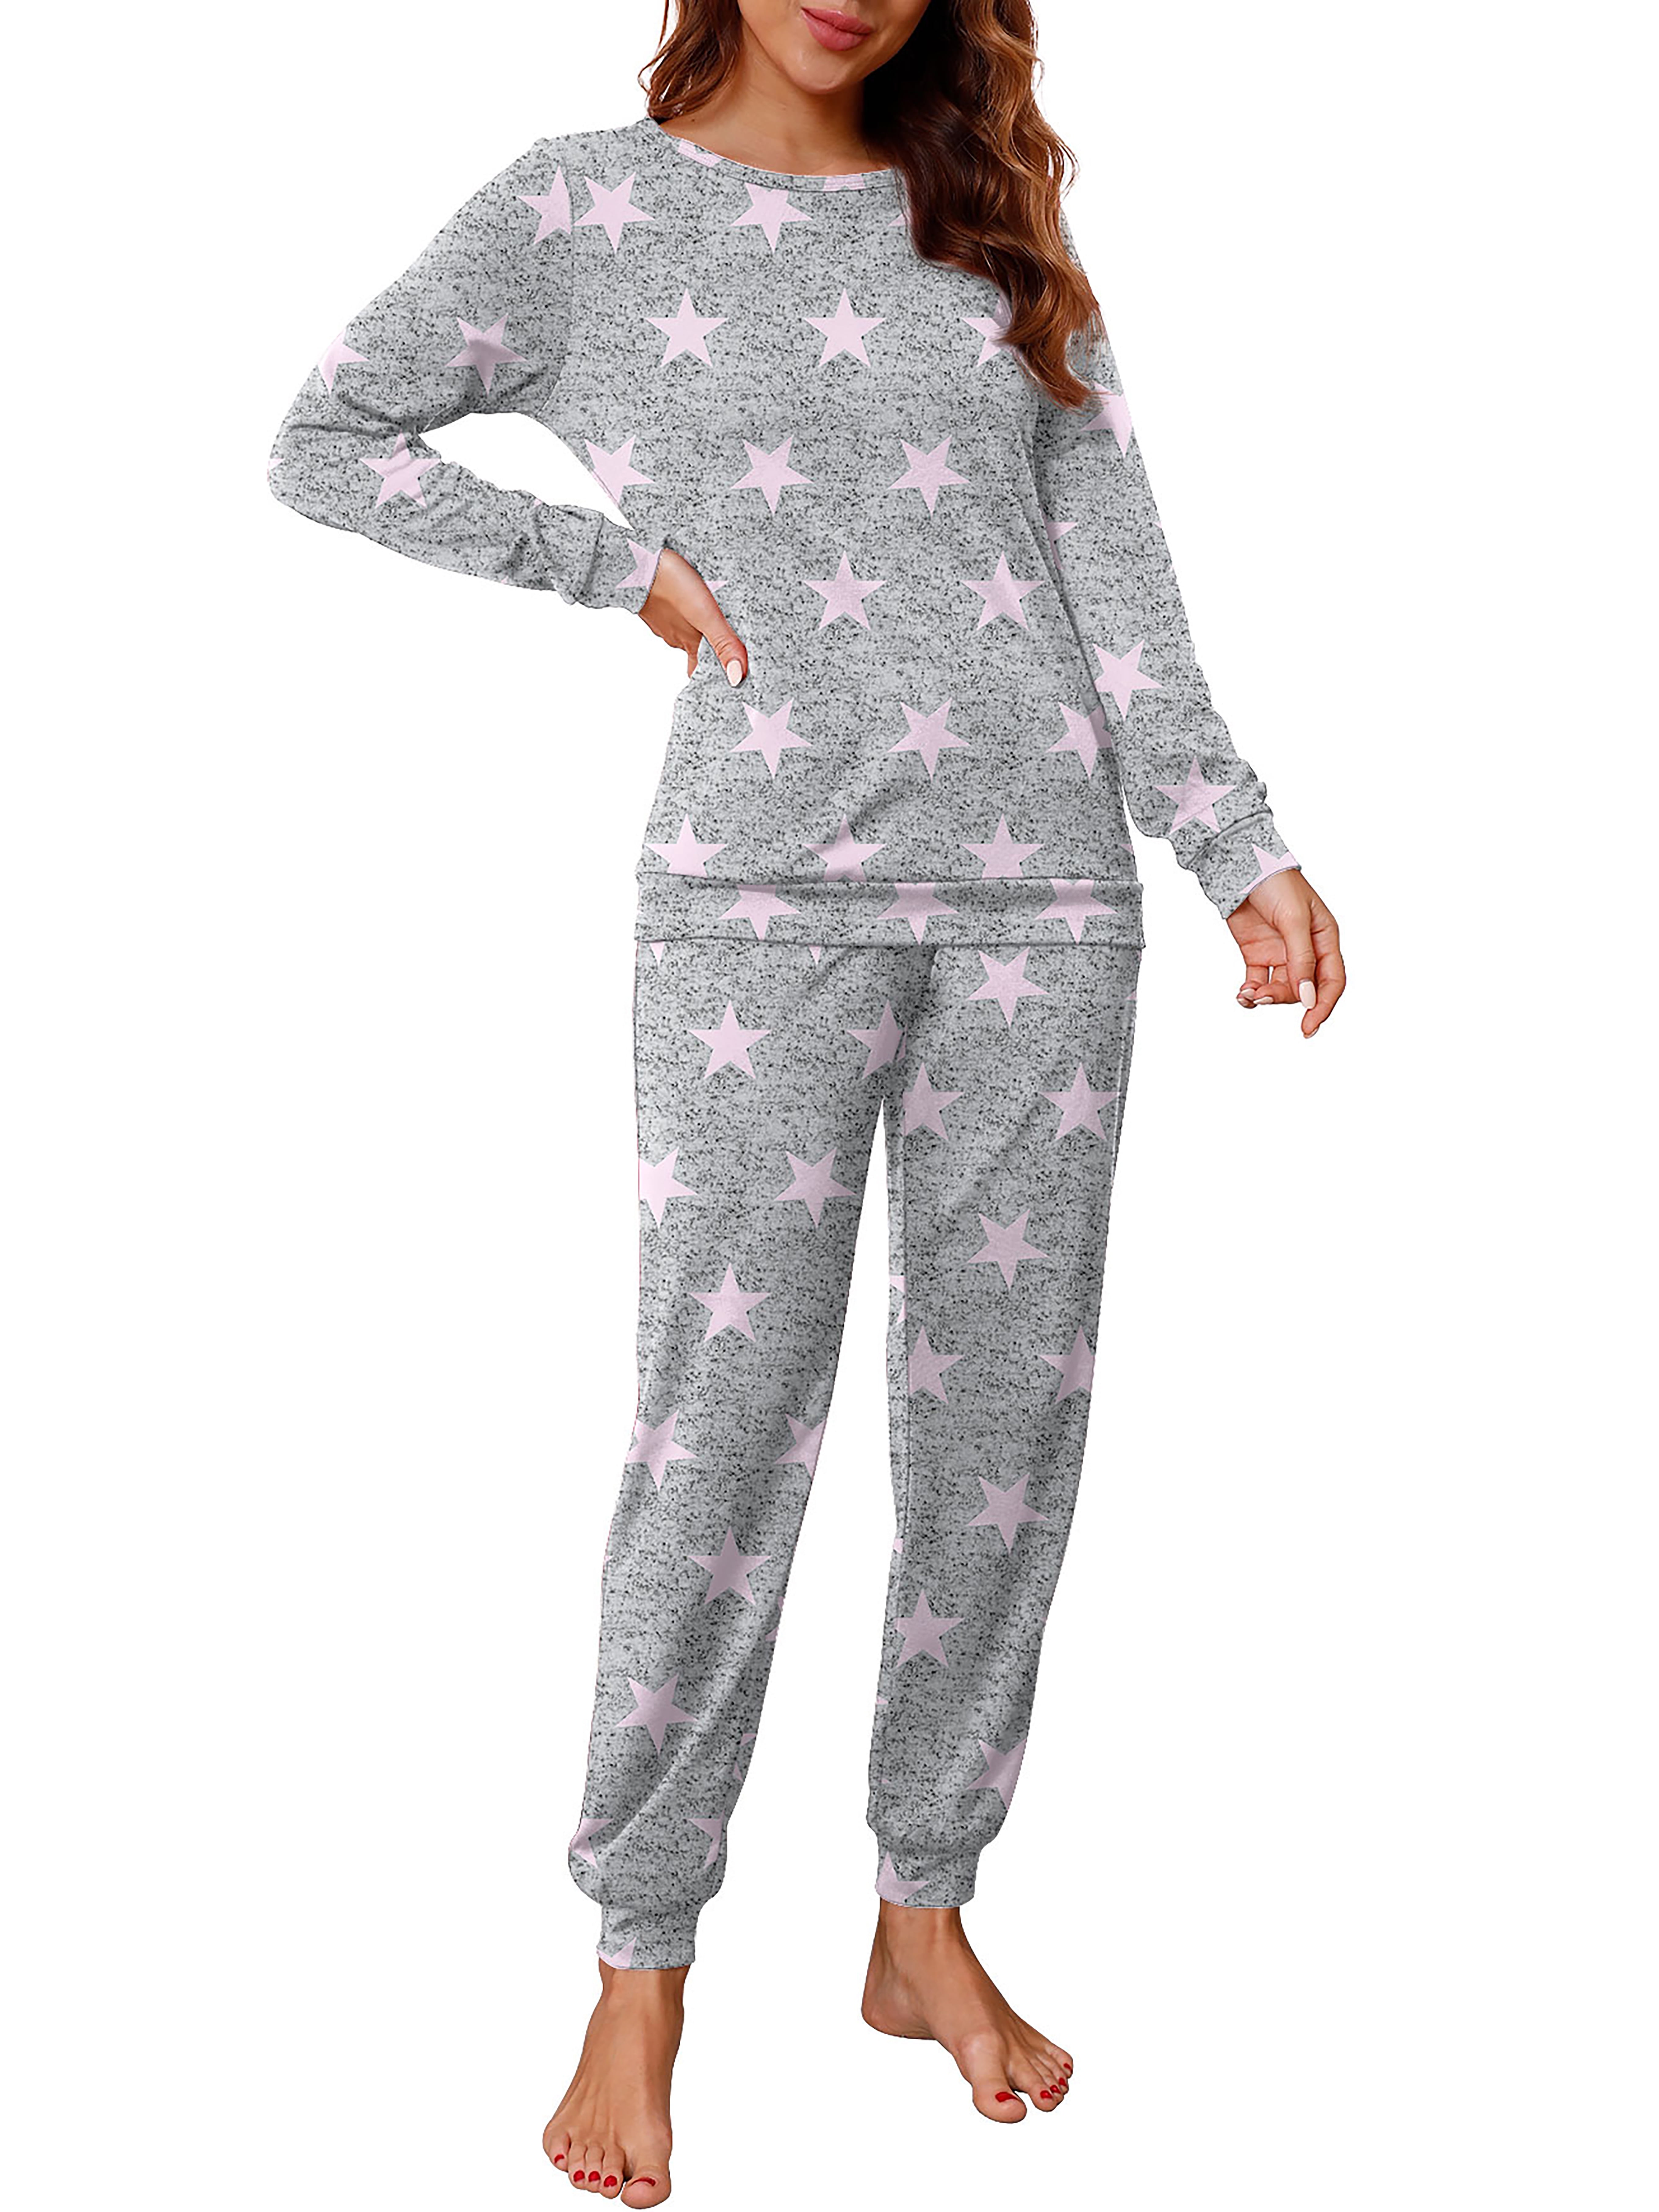 PajamaMania Women's Fleece Long Sleeve Pajama, 2-Piece Female PJ